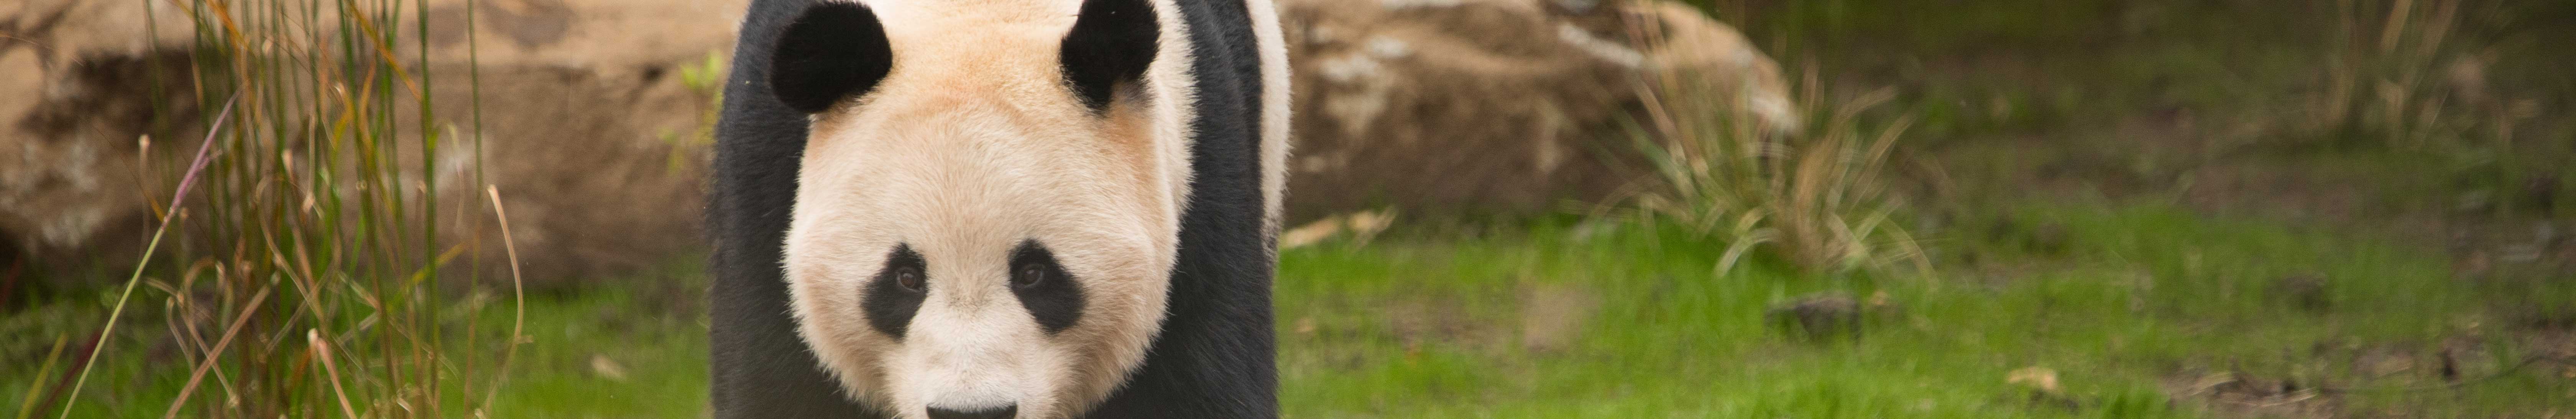 Panda walking